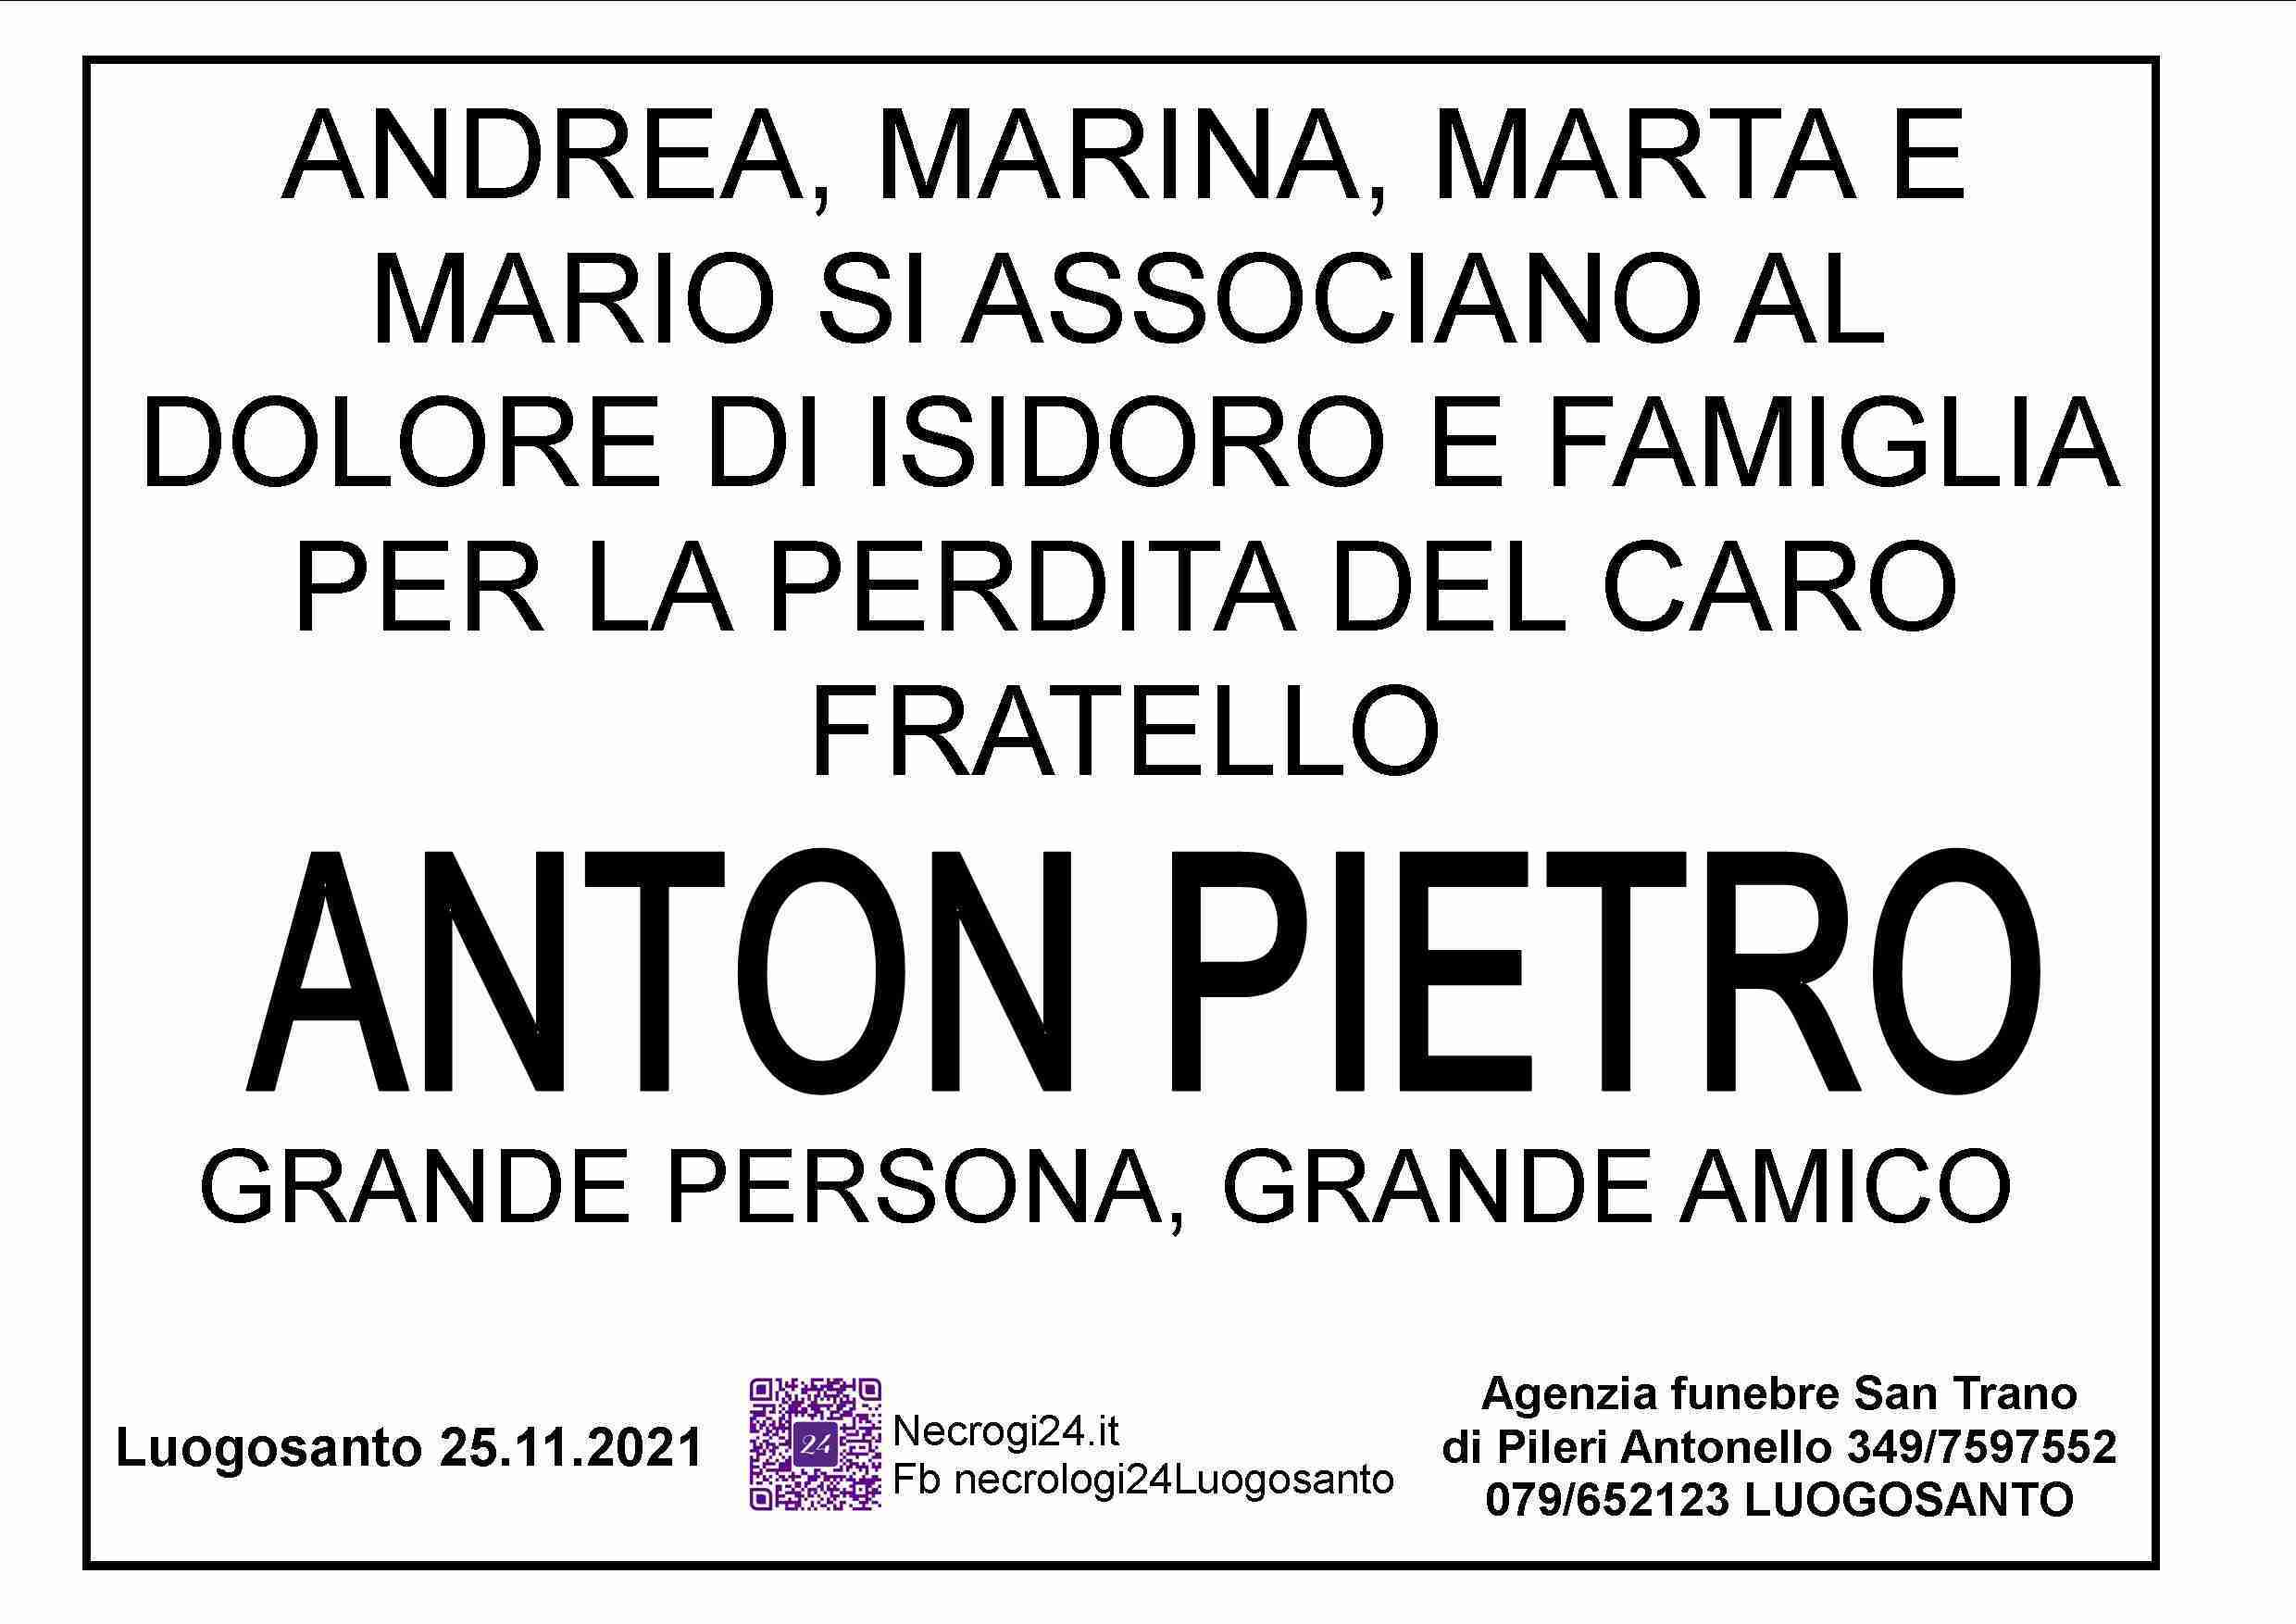 Salvatore Antonio Pietro Mamia